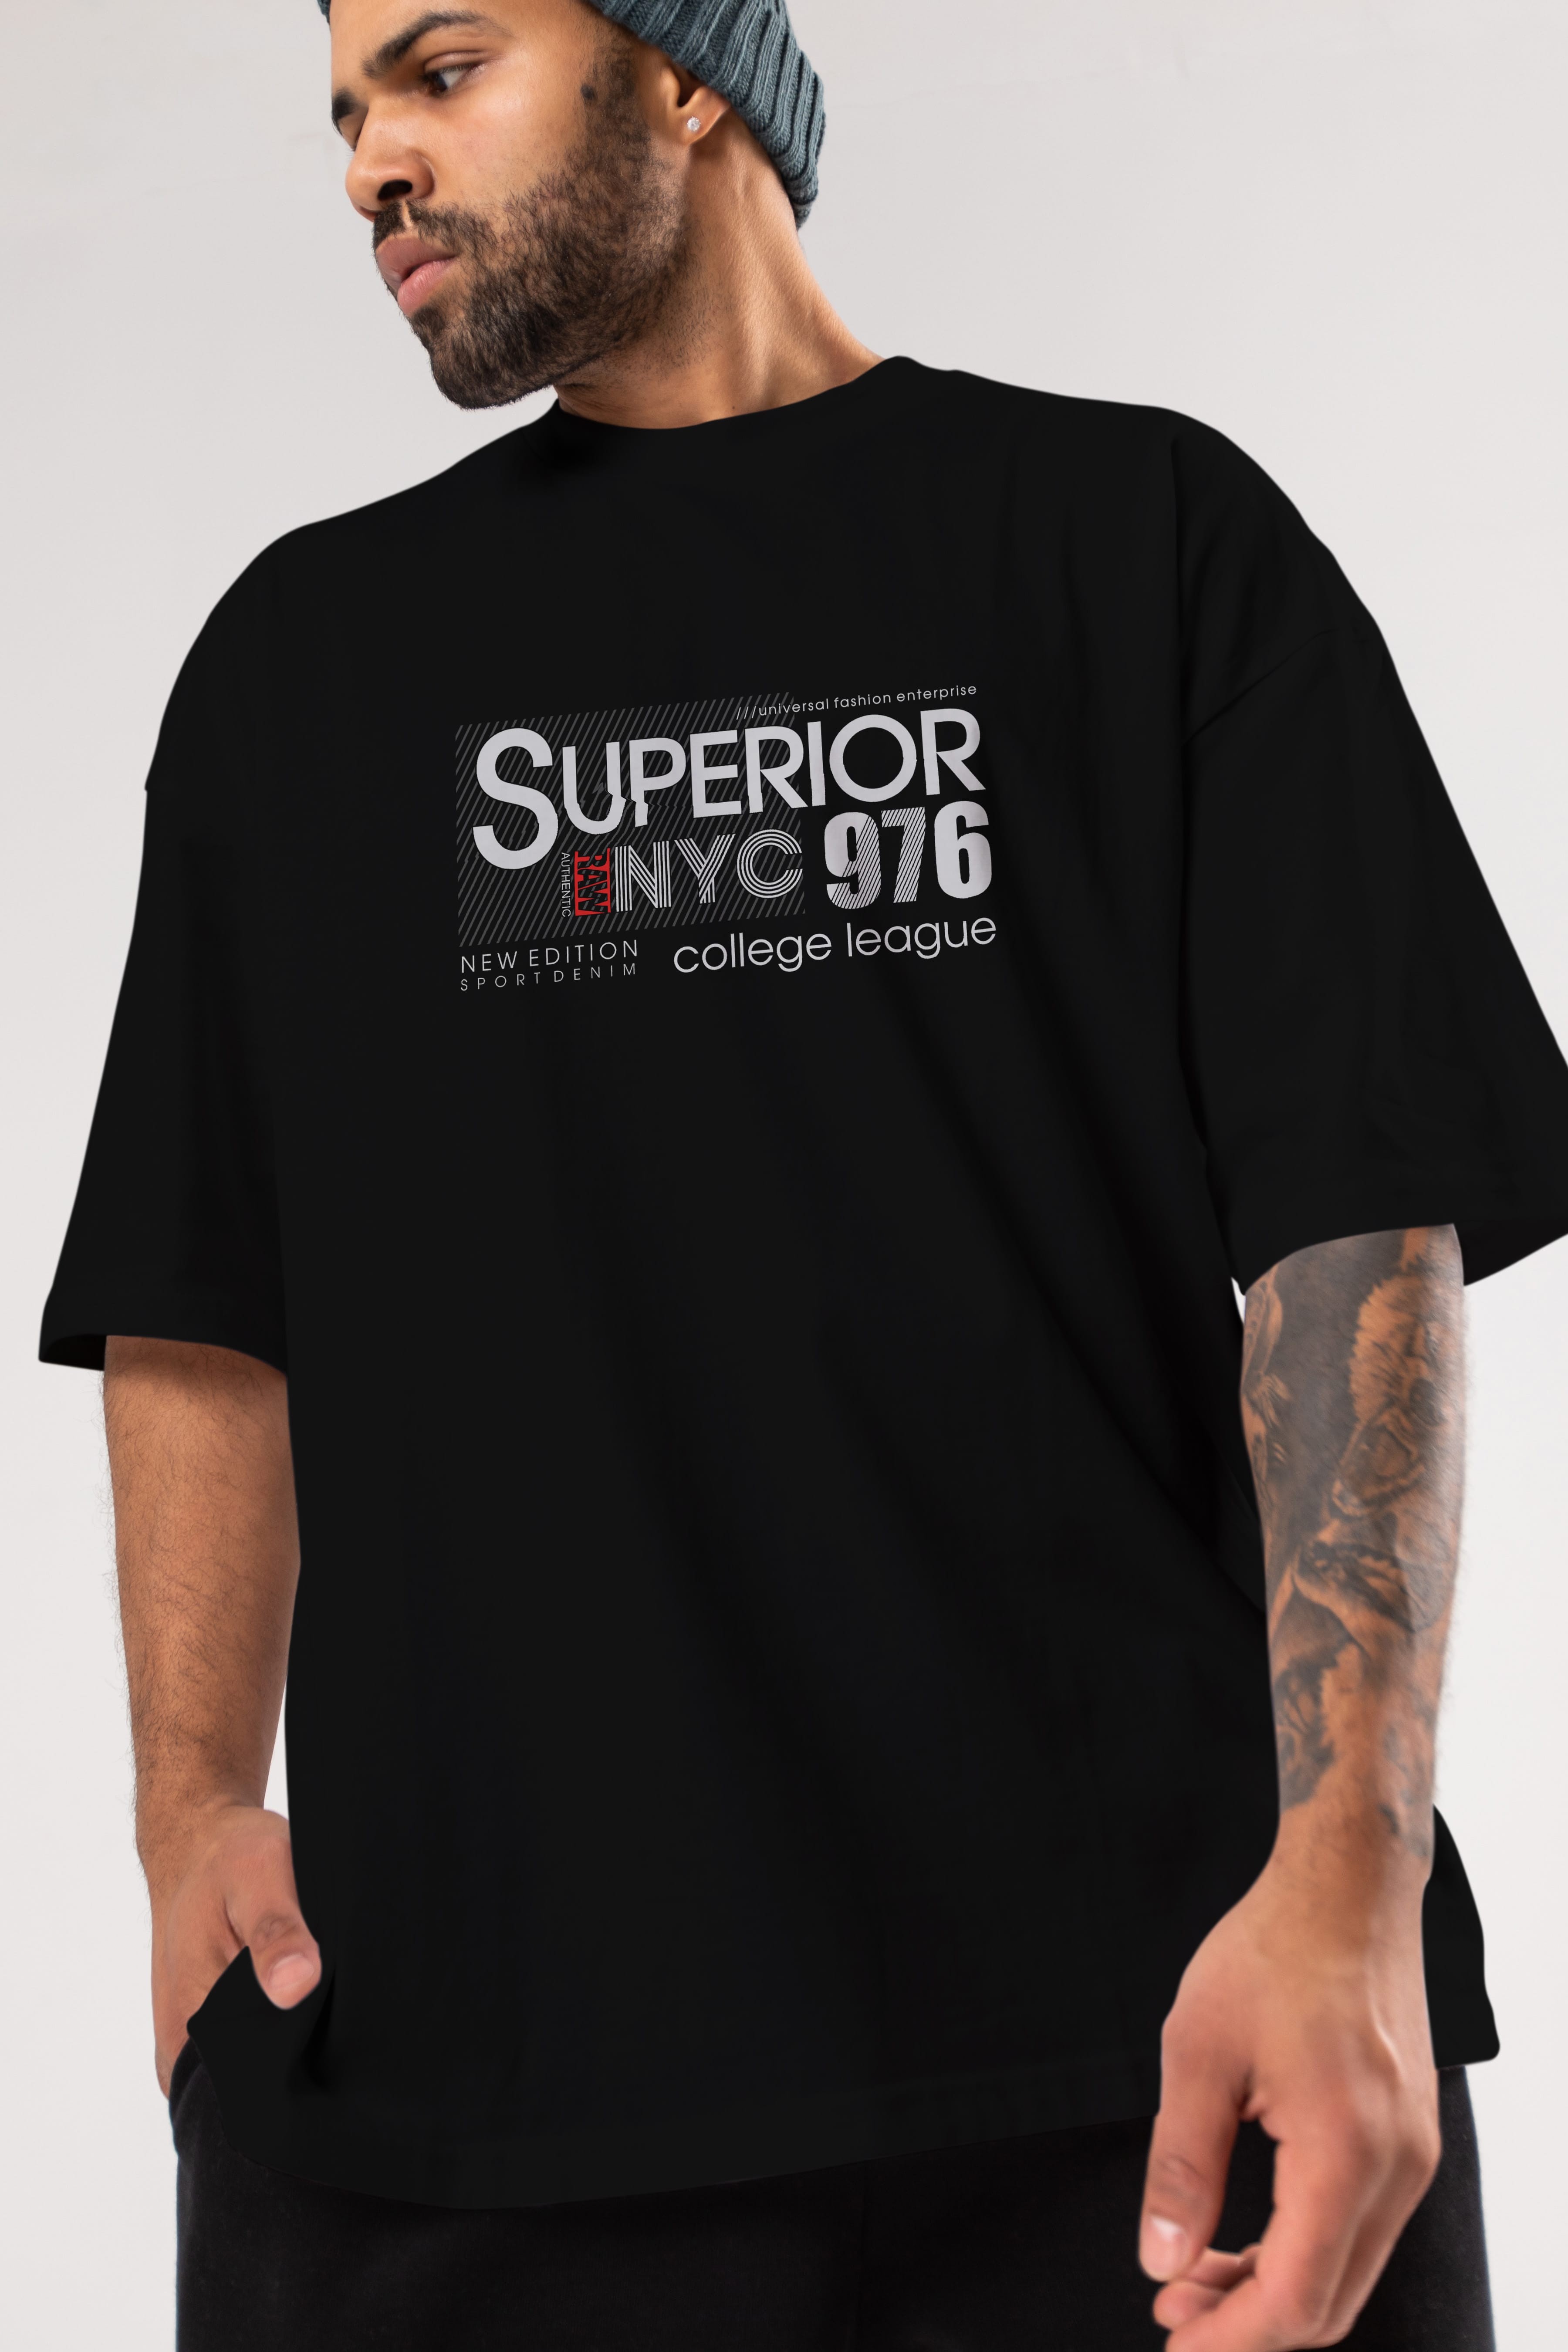 Superior 976 Ön Baskılı Oversize t-shirt Erkek Kadın Unisex